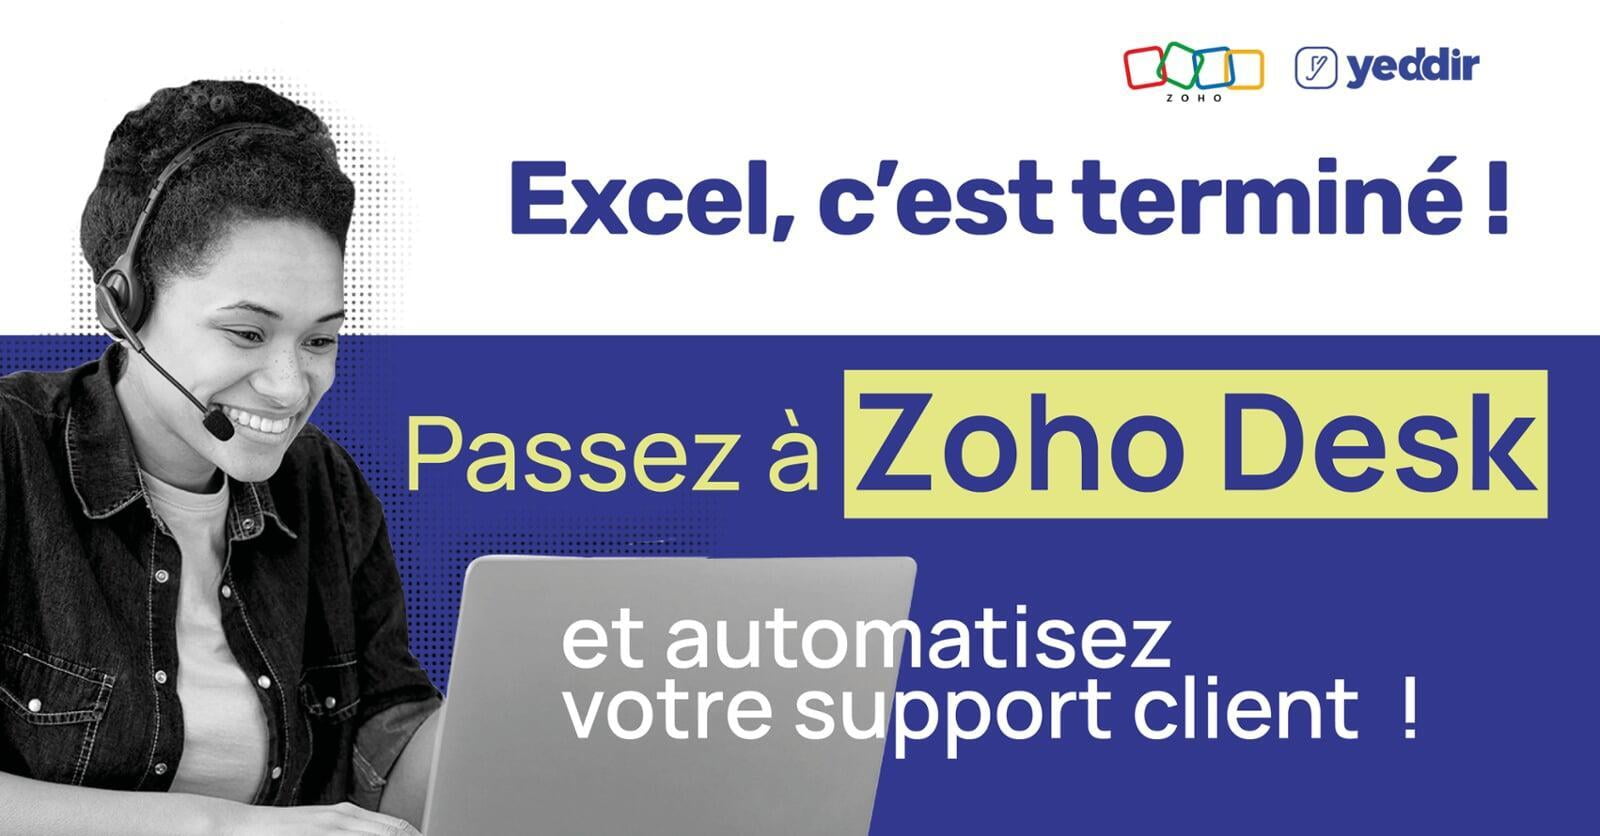 Excel, c'est terminé ! Zoho Desk redéfinit le Support Client.